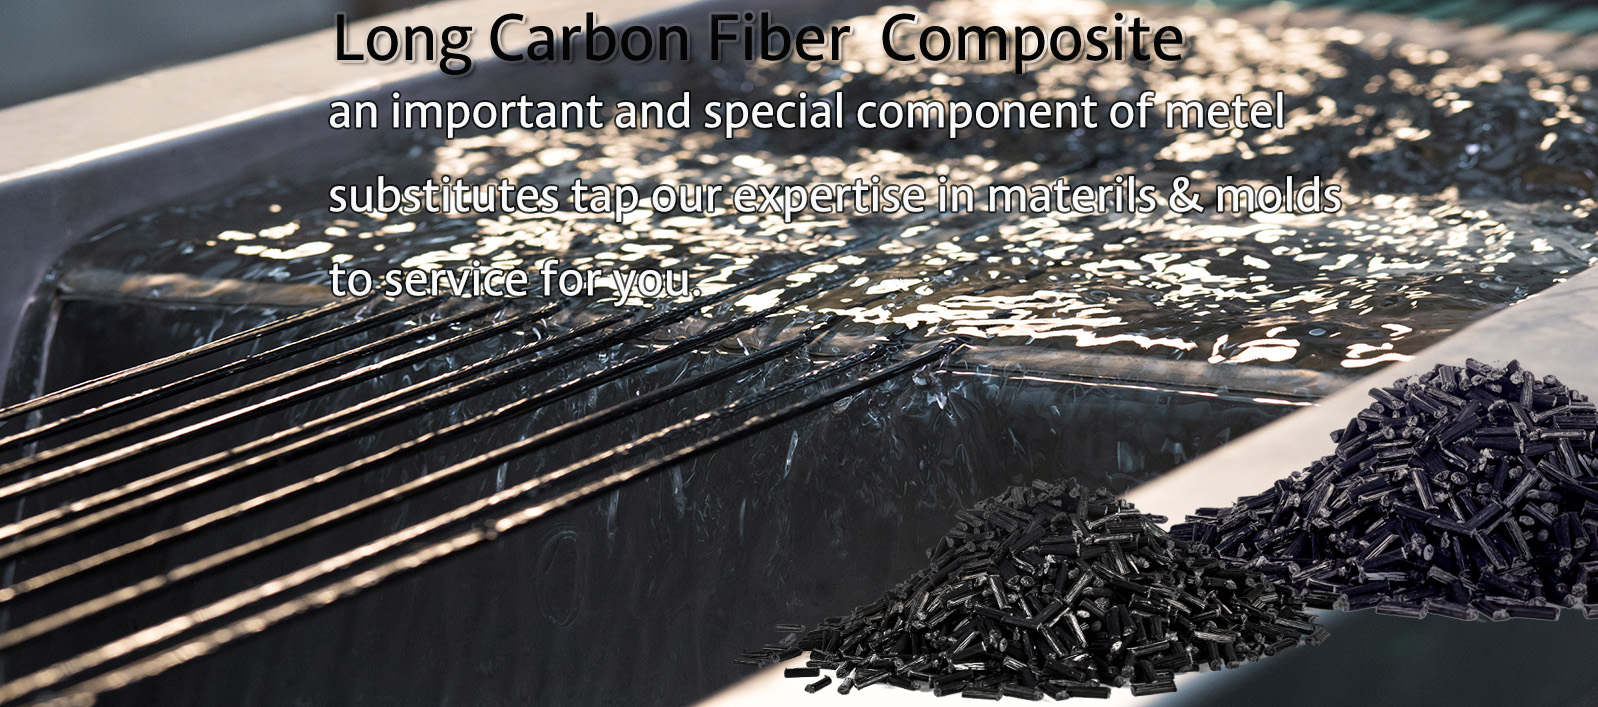 Long carbon fiber composites